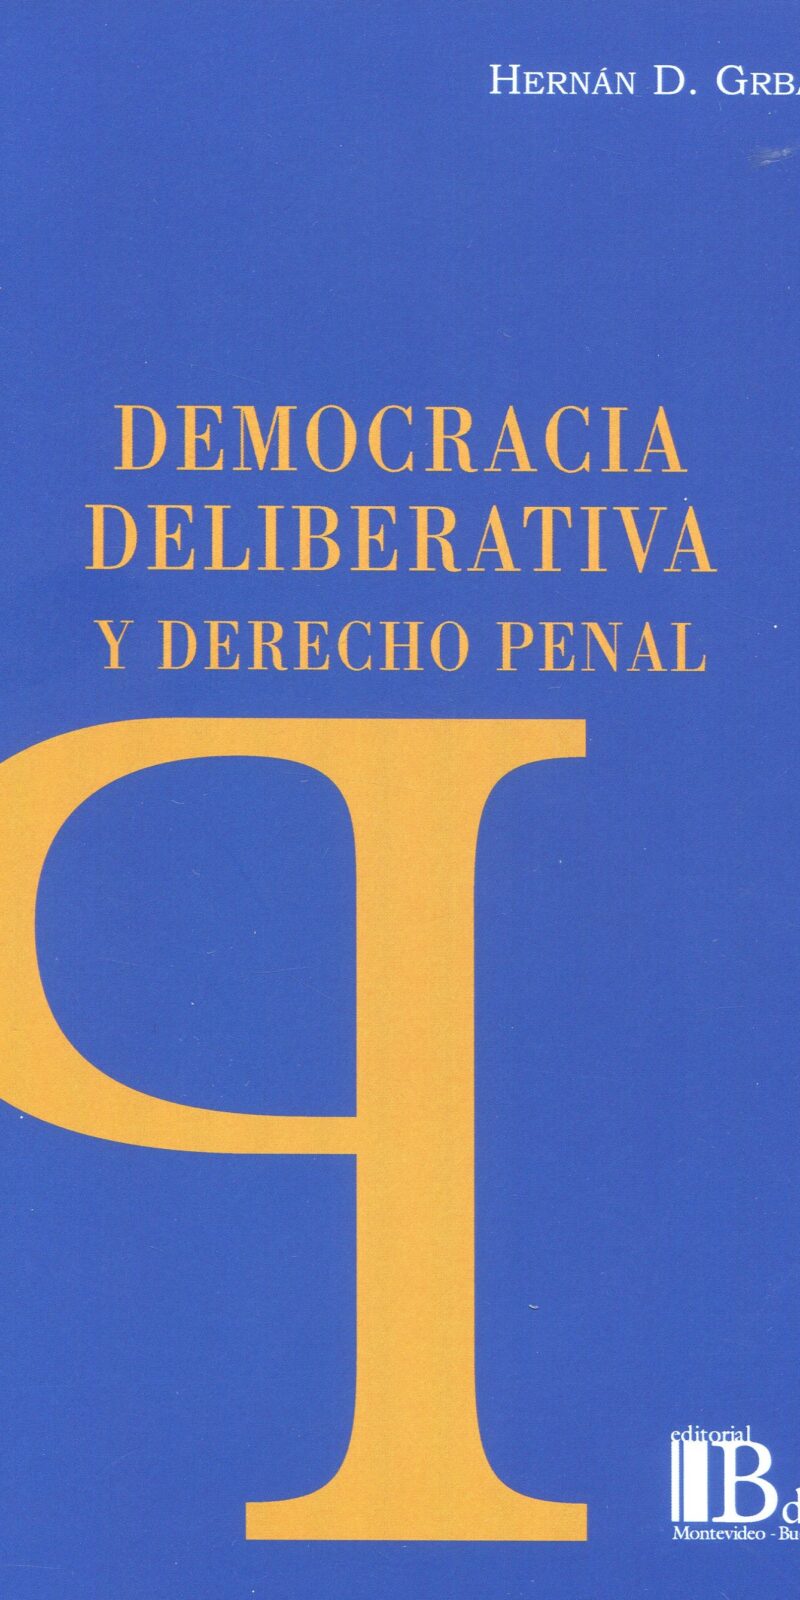 Democracia deliberativa derecho penal9789915650555